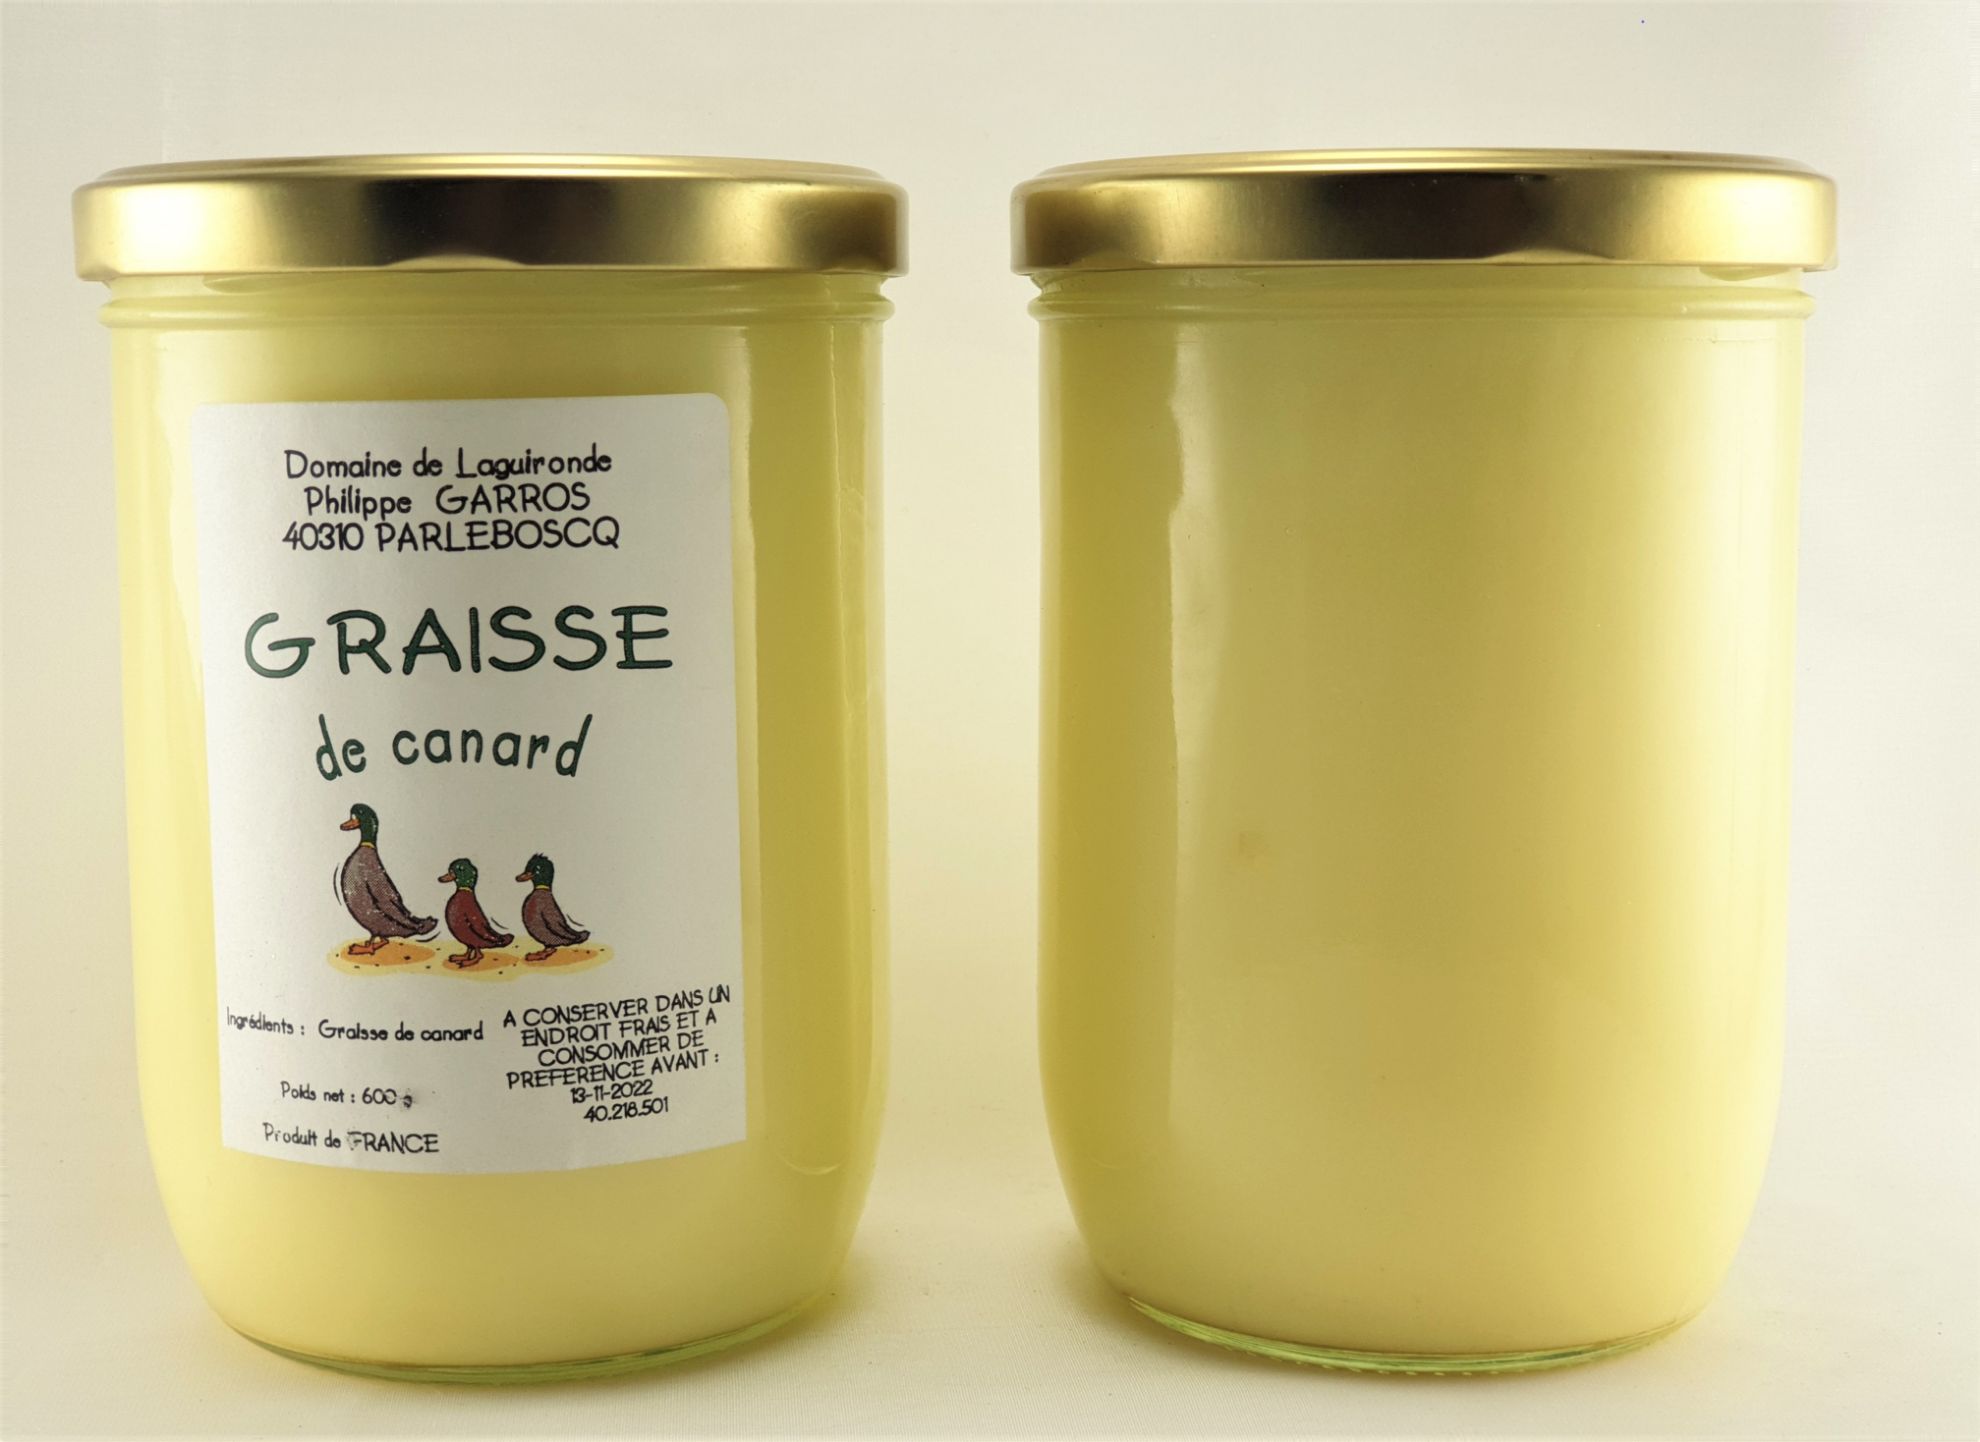 Graisse de canard - Duplaceau - 320g